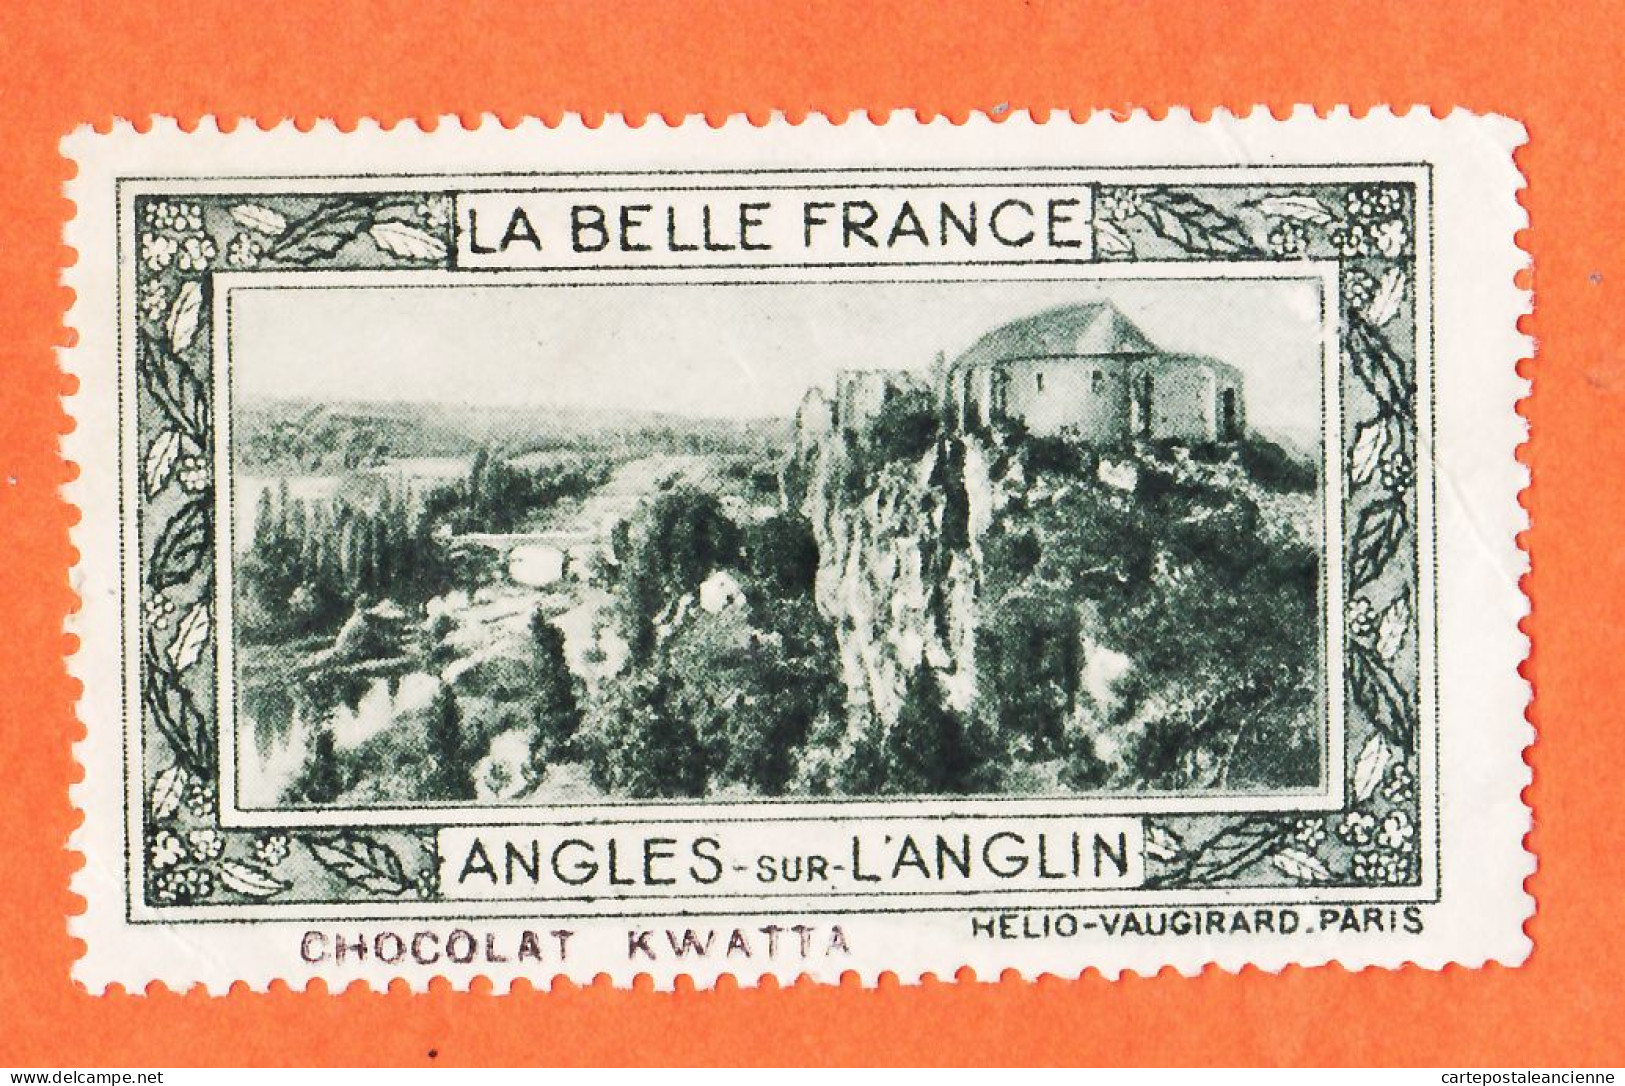 36975 / ⭐ ◉ LANGLES-sur-L'ANGLIN 86-Yonne Pub Chocolat KWATTA Vignette Collection BELLE FRANCE HELIO-VAUGIRARD - Toerisme (Vignetten)